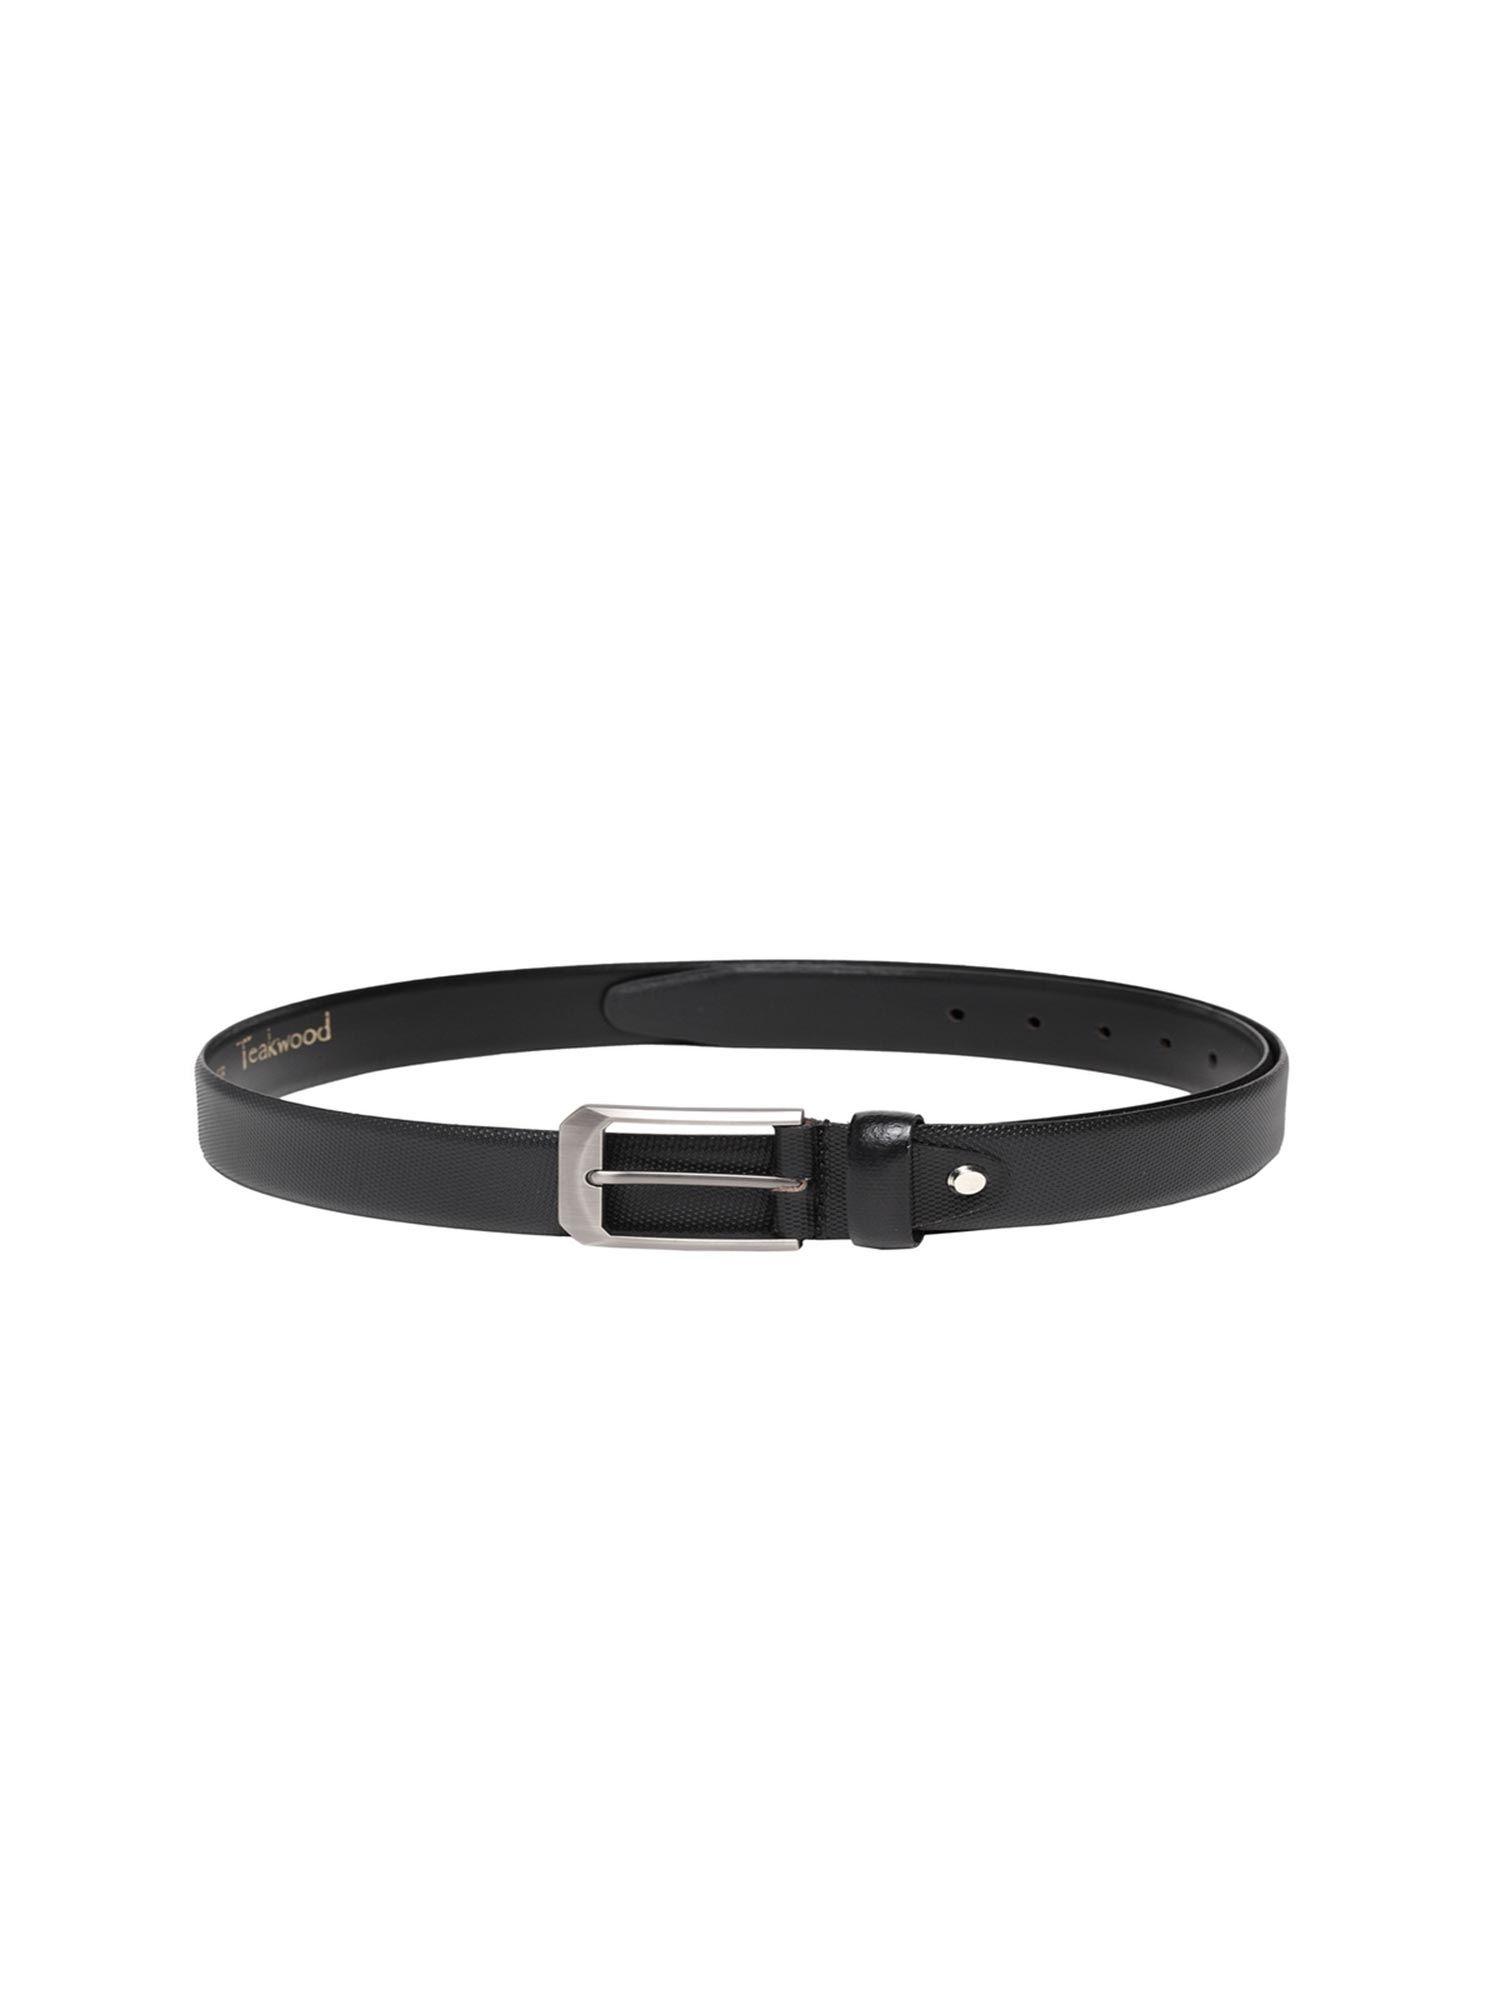 leathers black textured belt